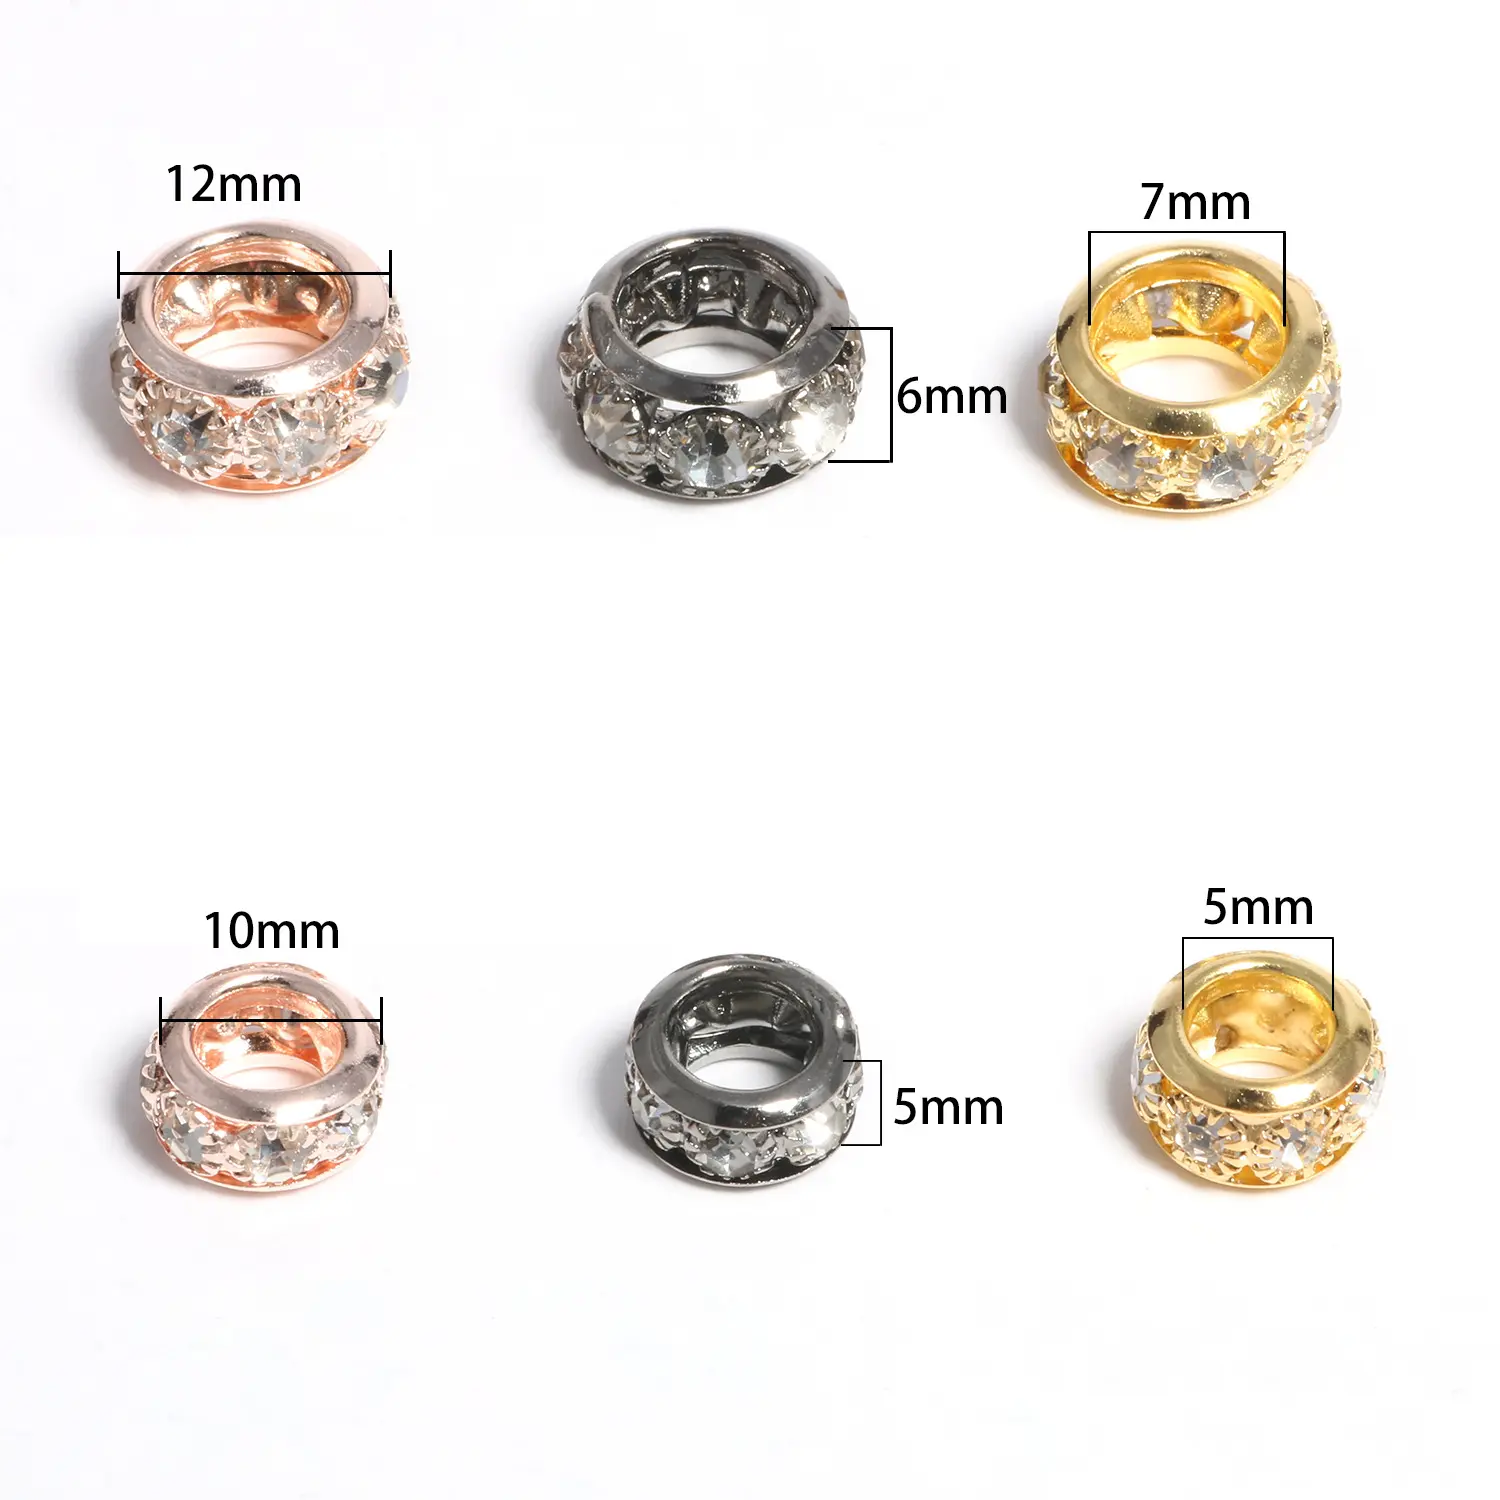 Großes Loch glänzende Strass Rondelle Spacer Perlen für Schmuck machen Diamant lose Perlen DIY Armband Metall Schmuck Zubehör